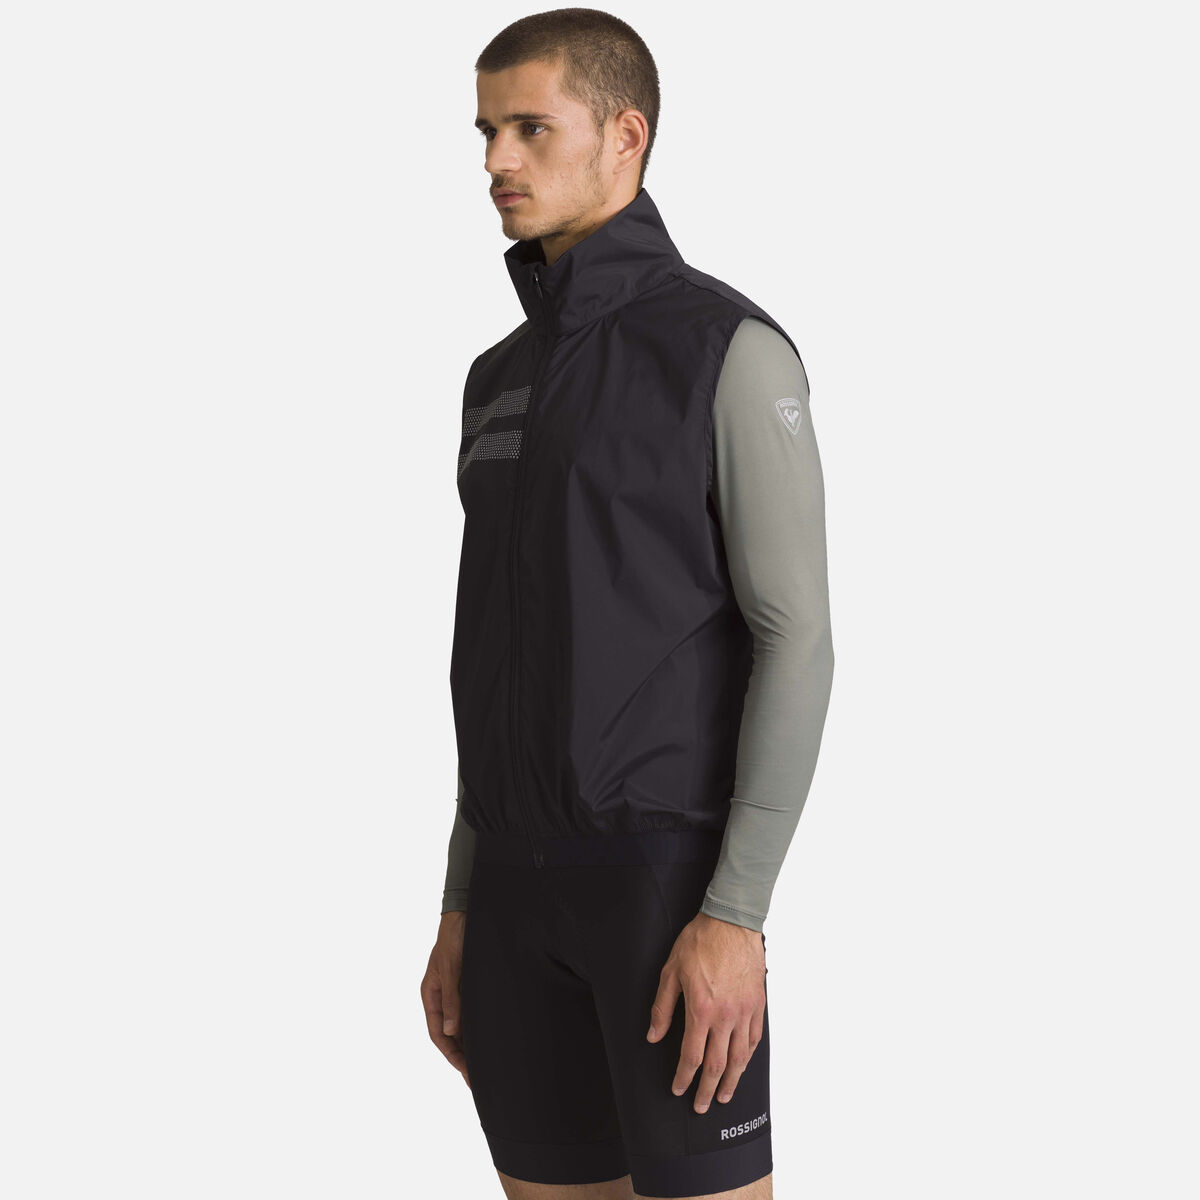 Rossignol Men's Lightweight Breathable Vest Black